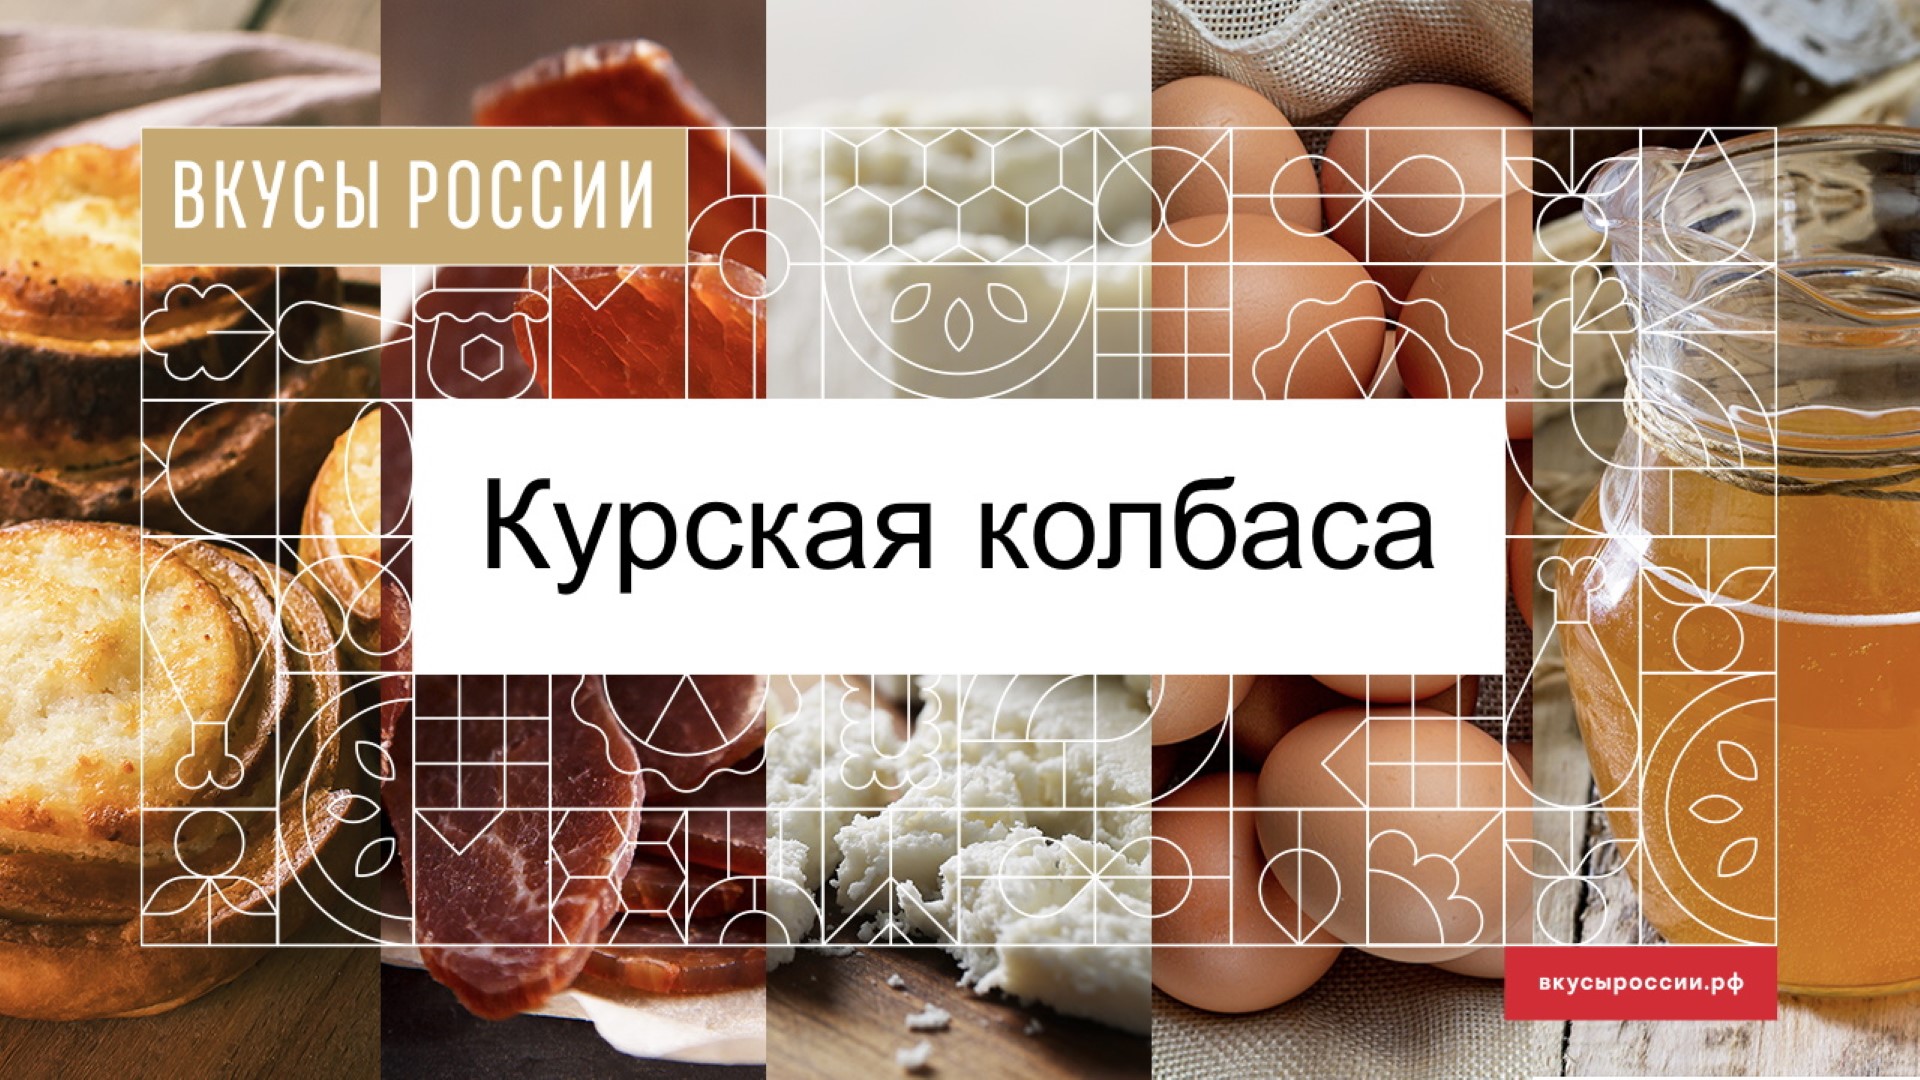 Поддержи курскую колбасу на Конкурсе «Вкусы России»